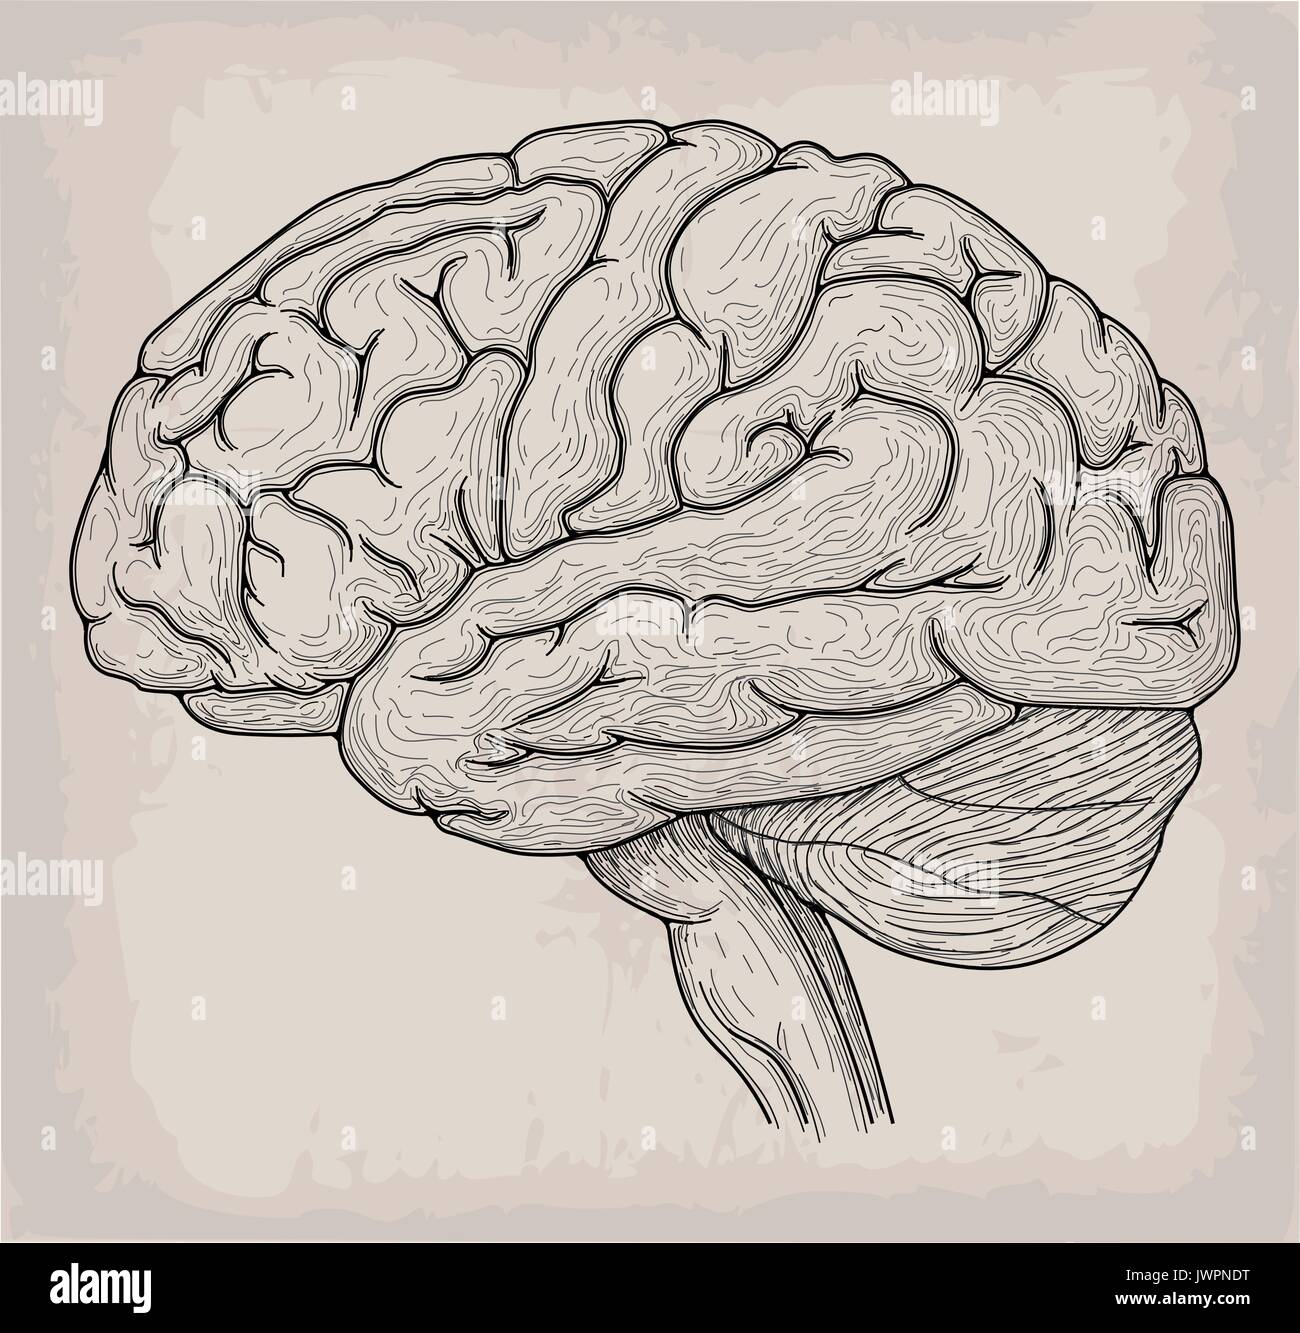 Human Brain Drawing